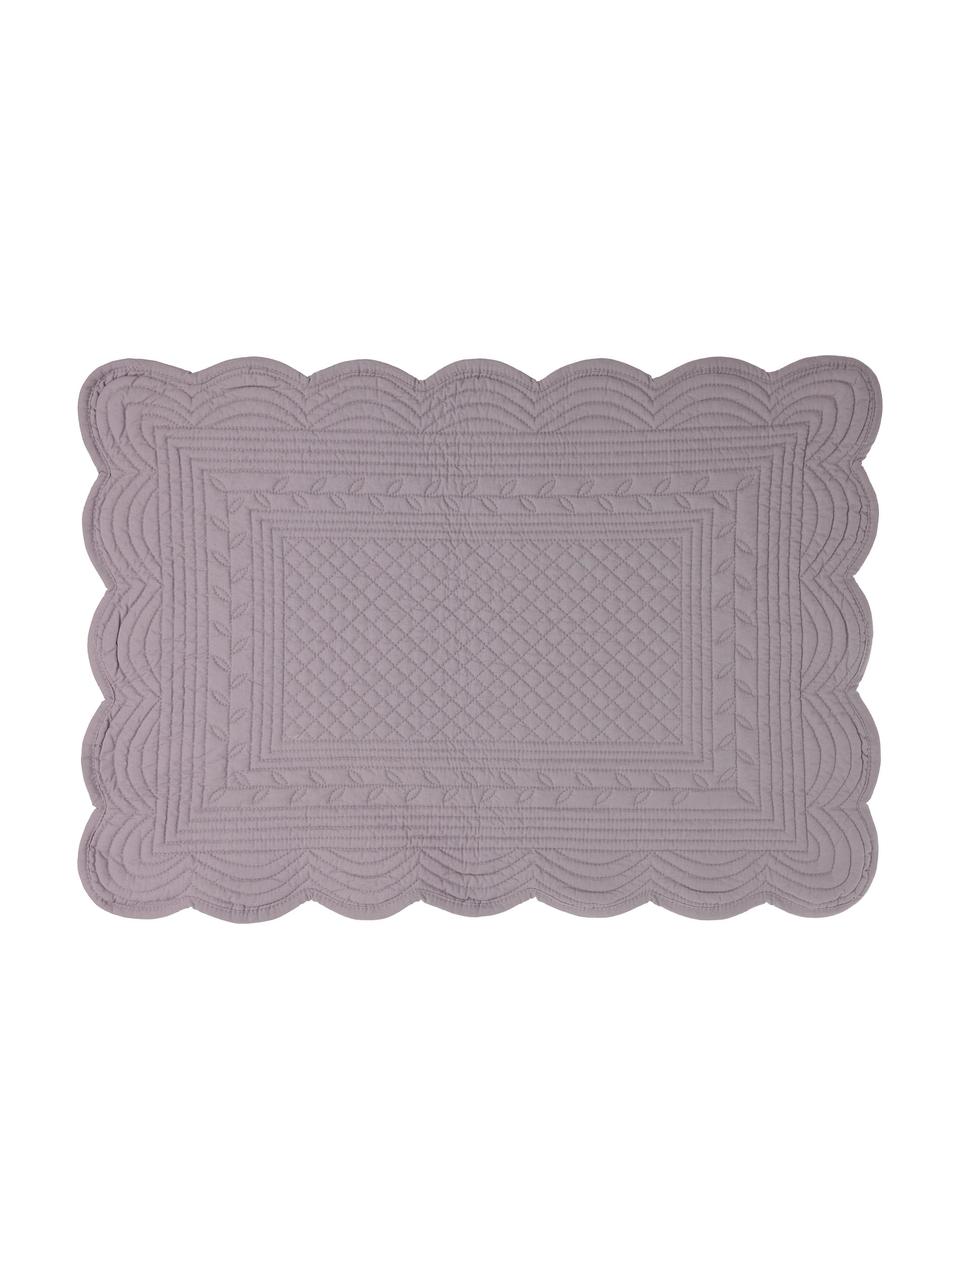 Podkładka z bawełny Boutis, 2 szt., 100% bawełna, Purpurowy, S 49 x D 34 cm